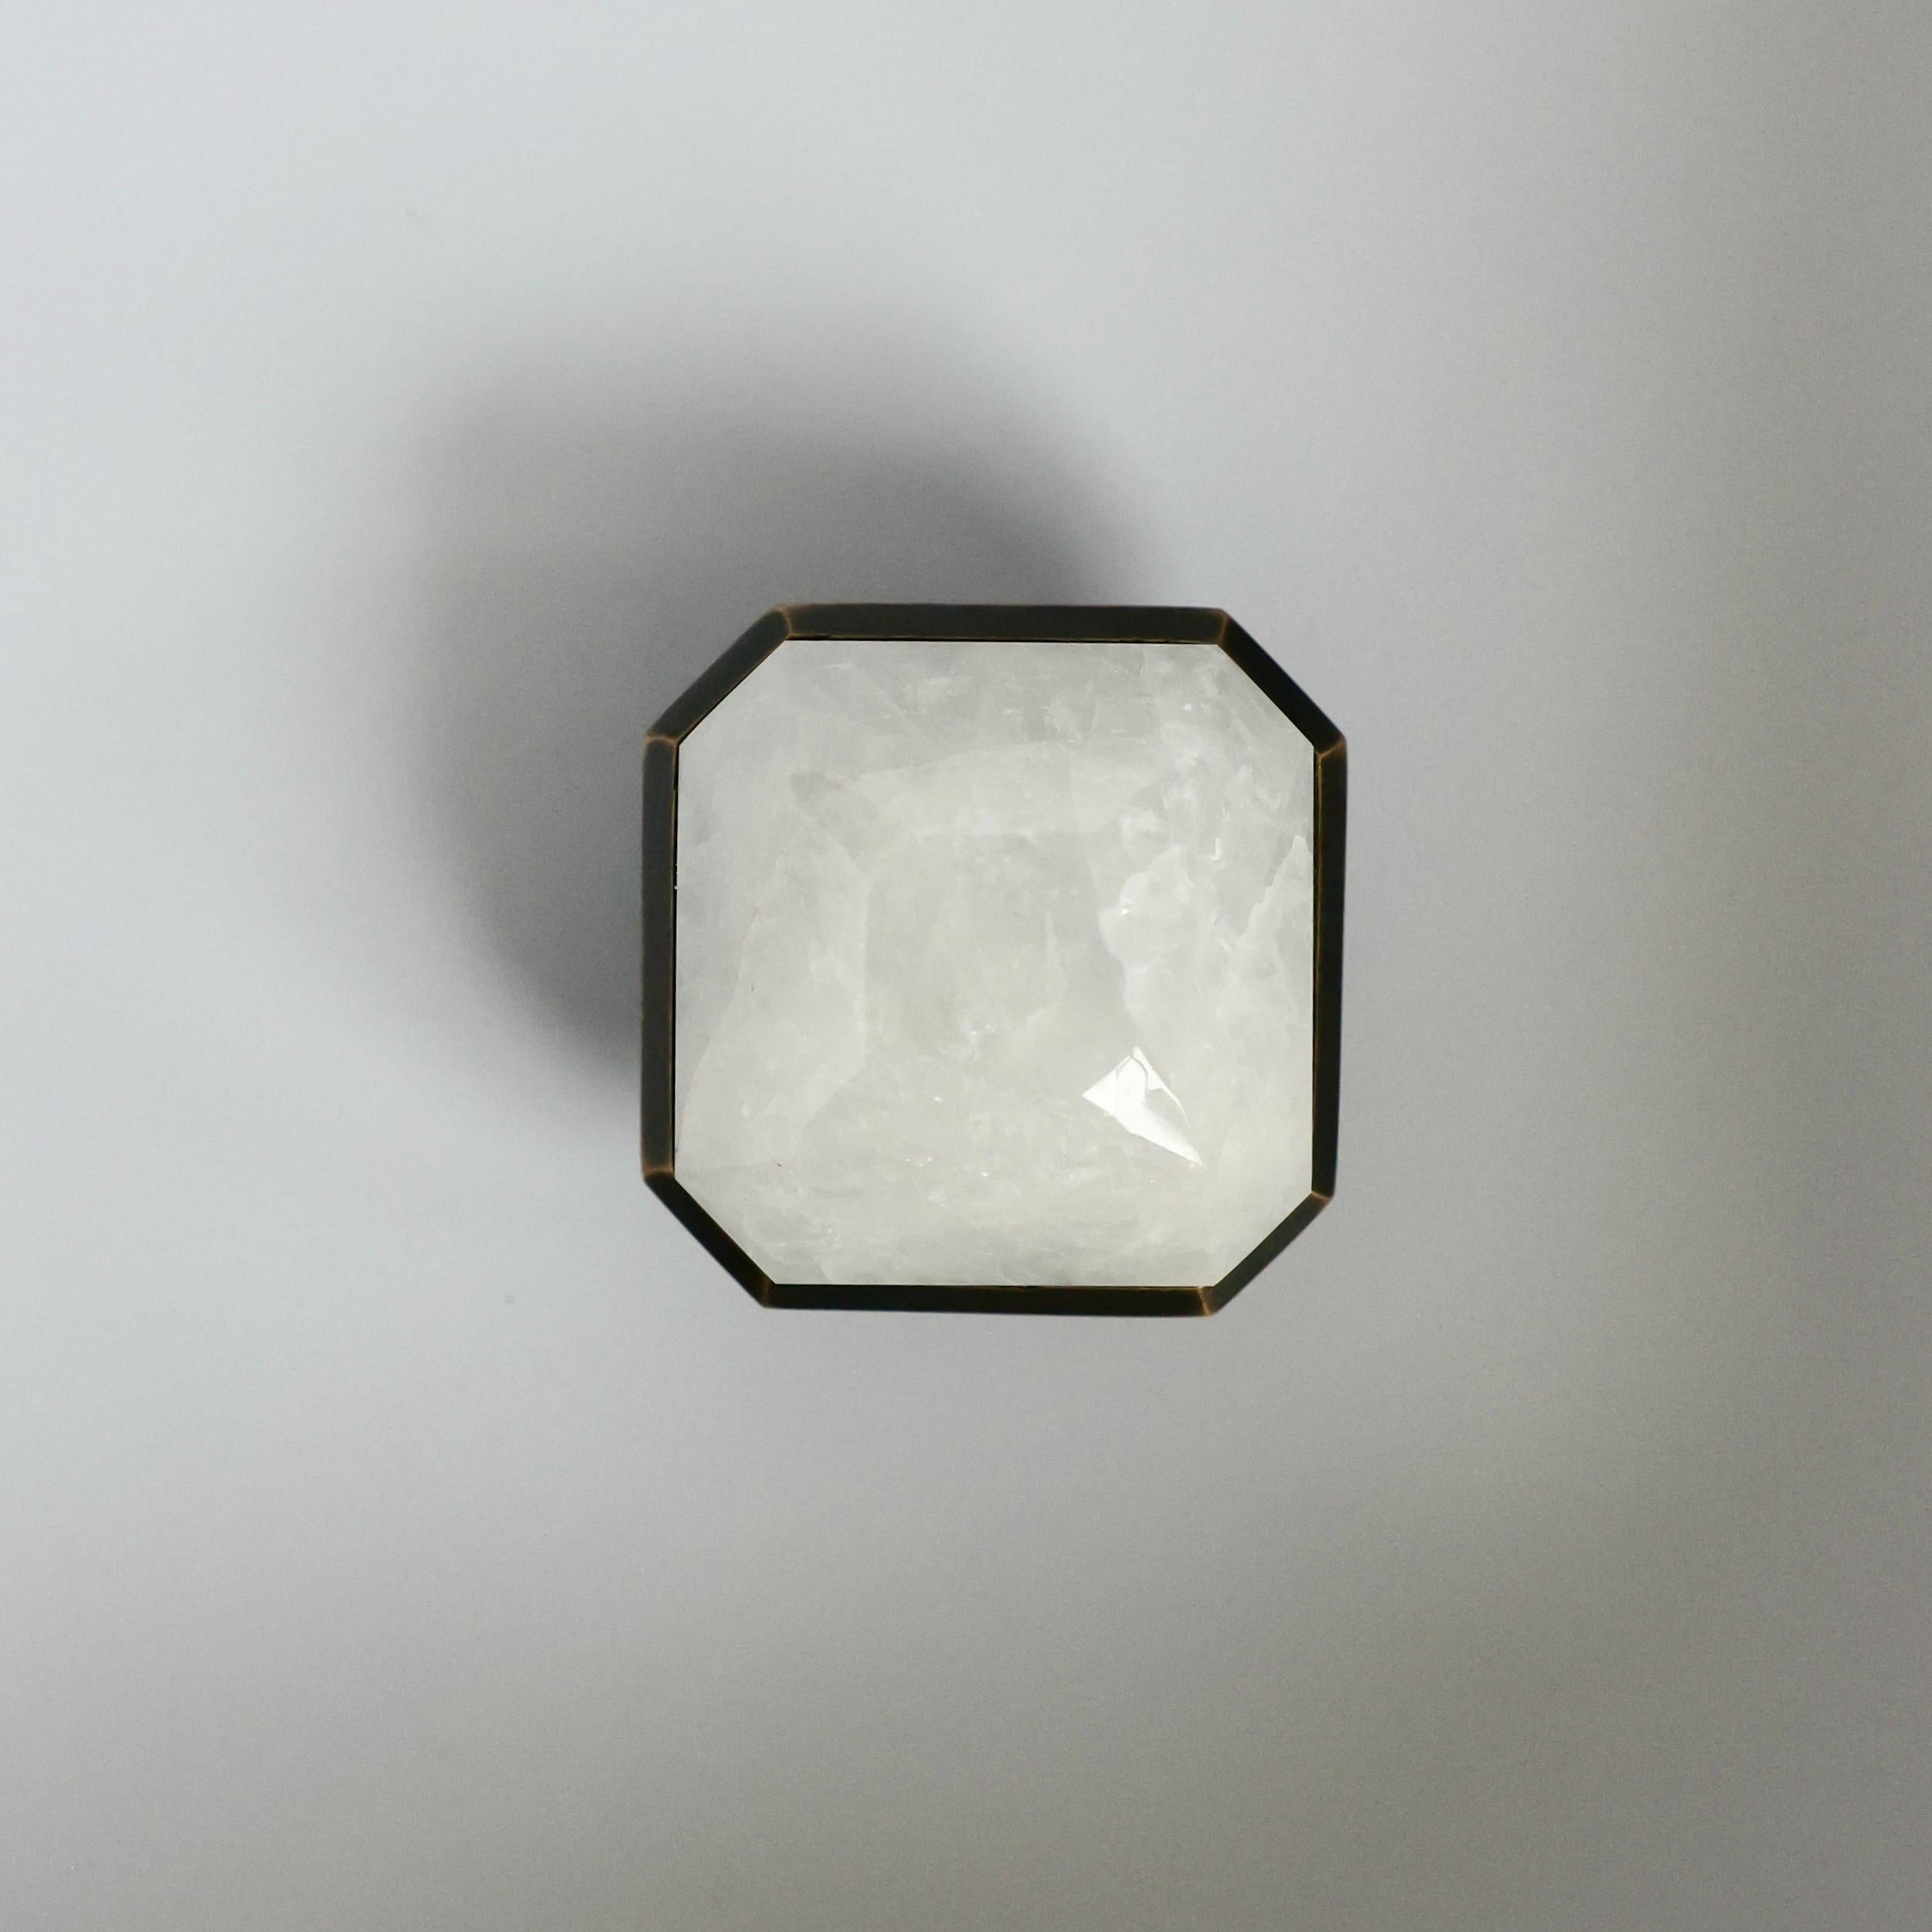 Knöpfe aus Bergkristall mit Diamantschliff und poliertem Messingdekor, entworfen von Phoenix 

Metallausführung und individuelle Größe auf Anfrage.
